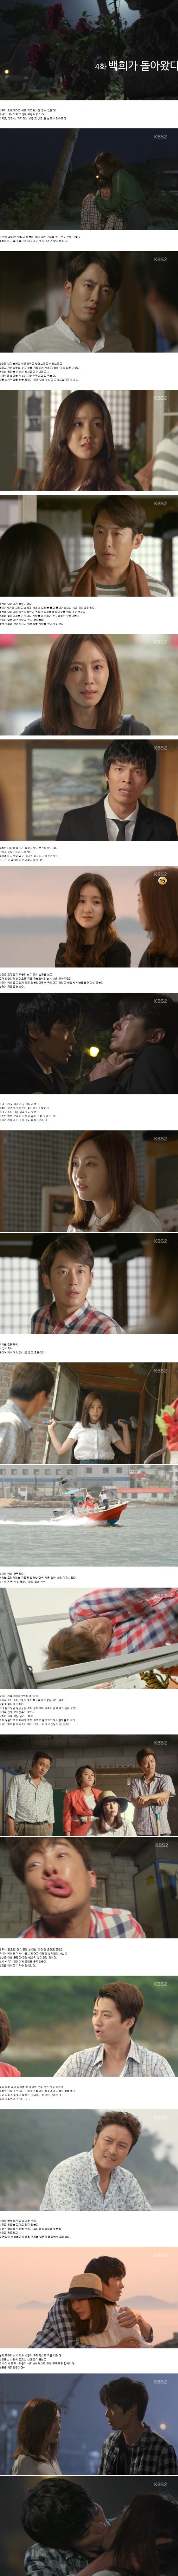 final episode 4 captures for the Korean drama 'Baek-hee is Back'